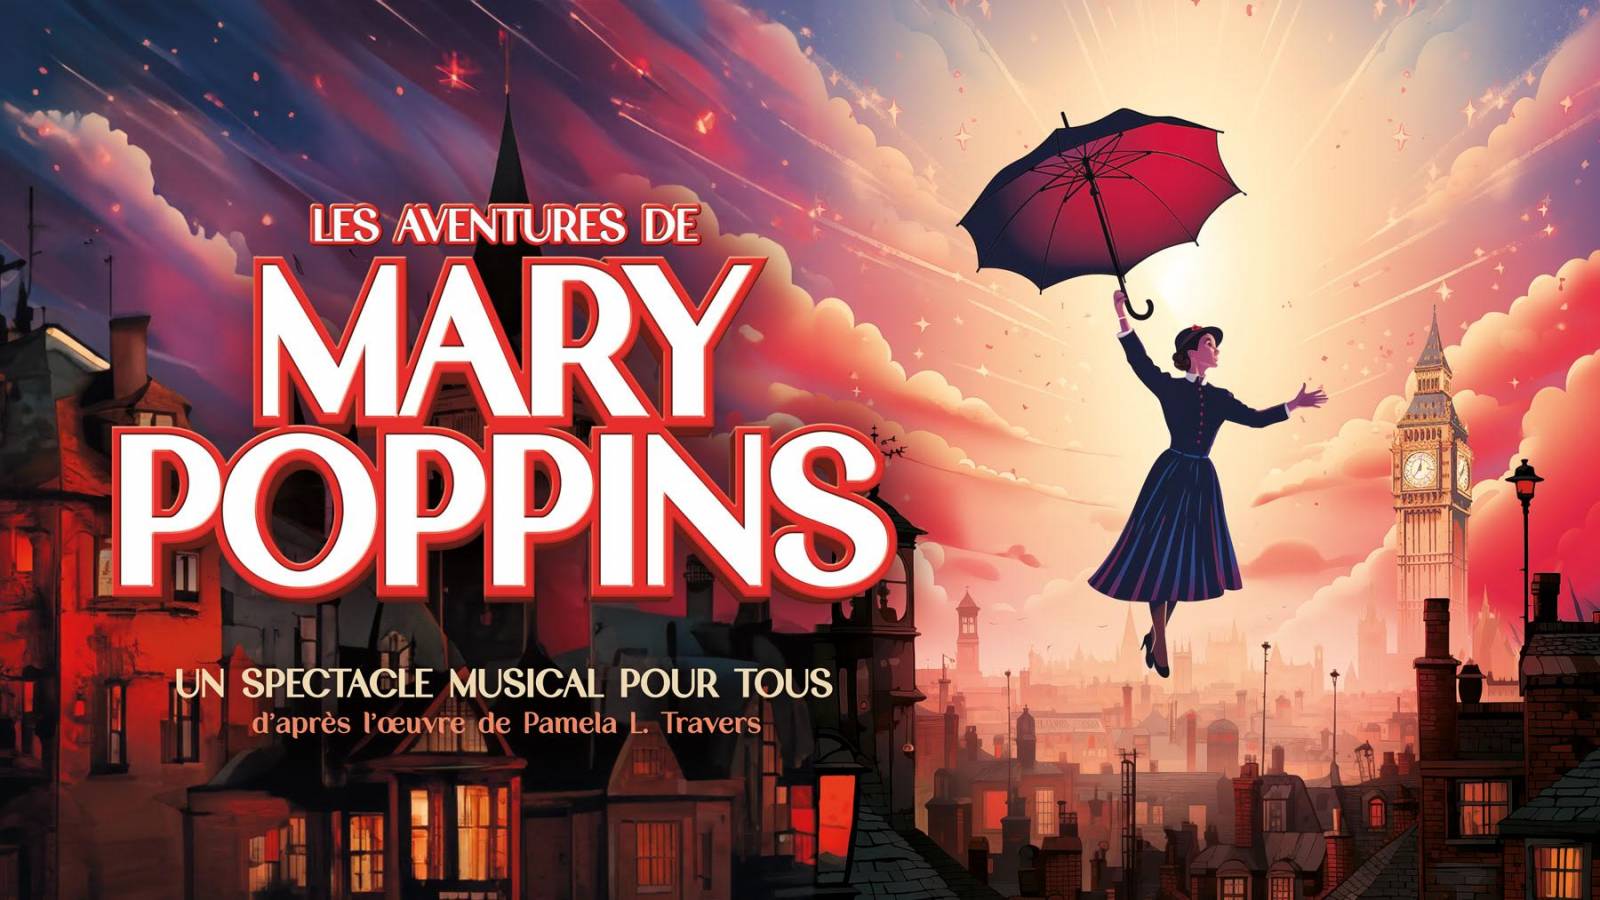 Les nouvelles aventures de Mary Poppins, comédie musicale pour enfants et famille, CSE, entreprises, en tournée dans toute la France